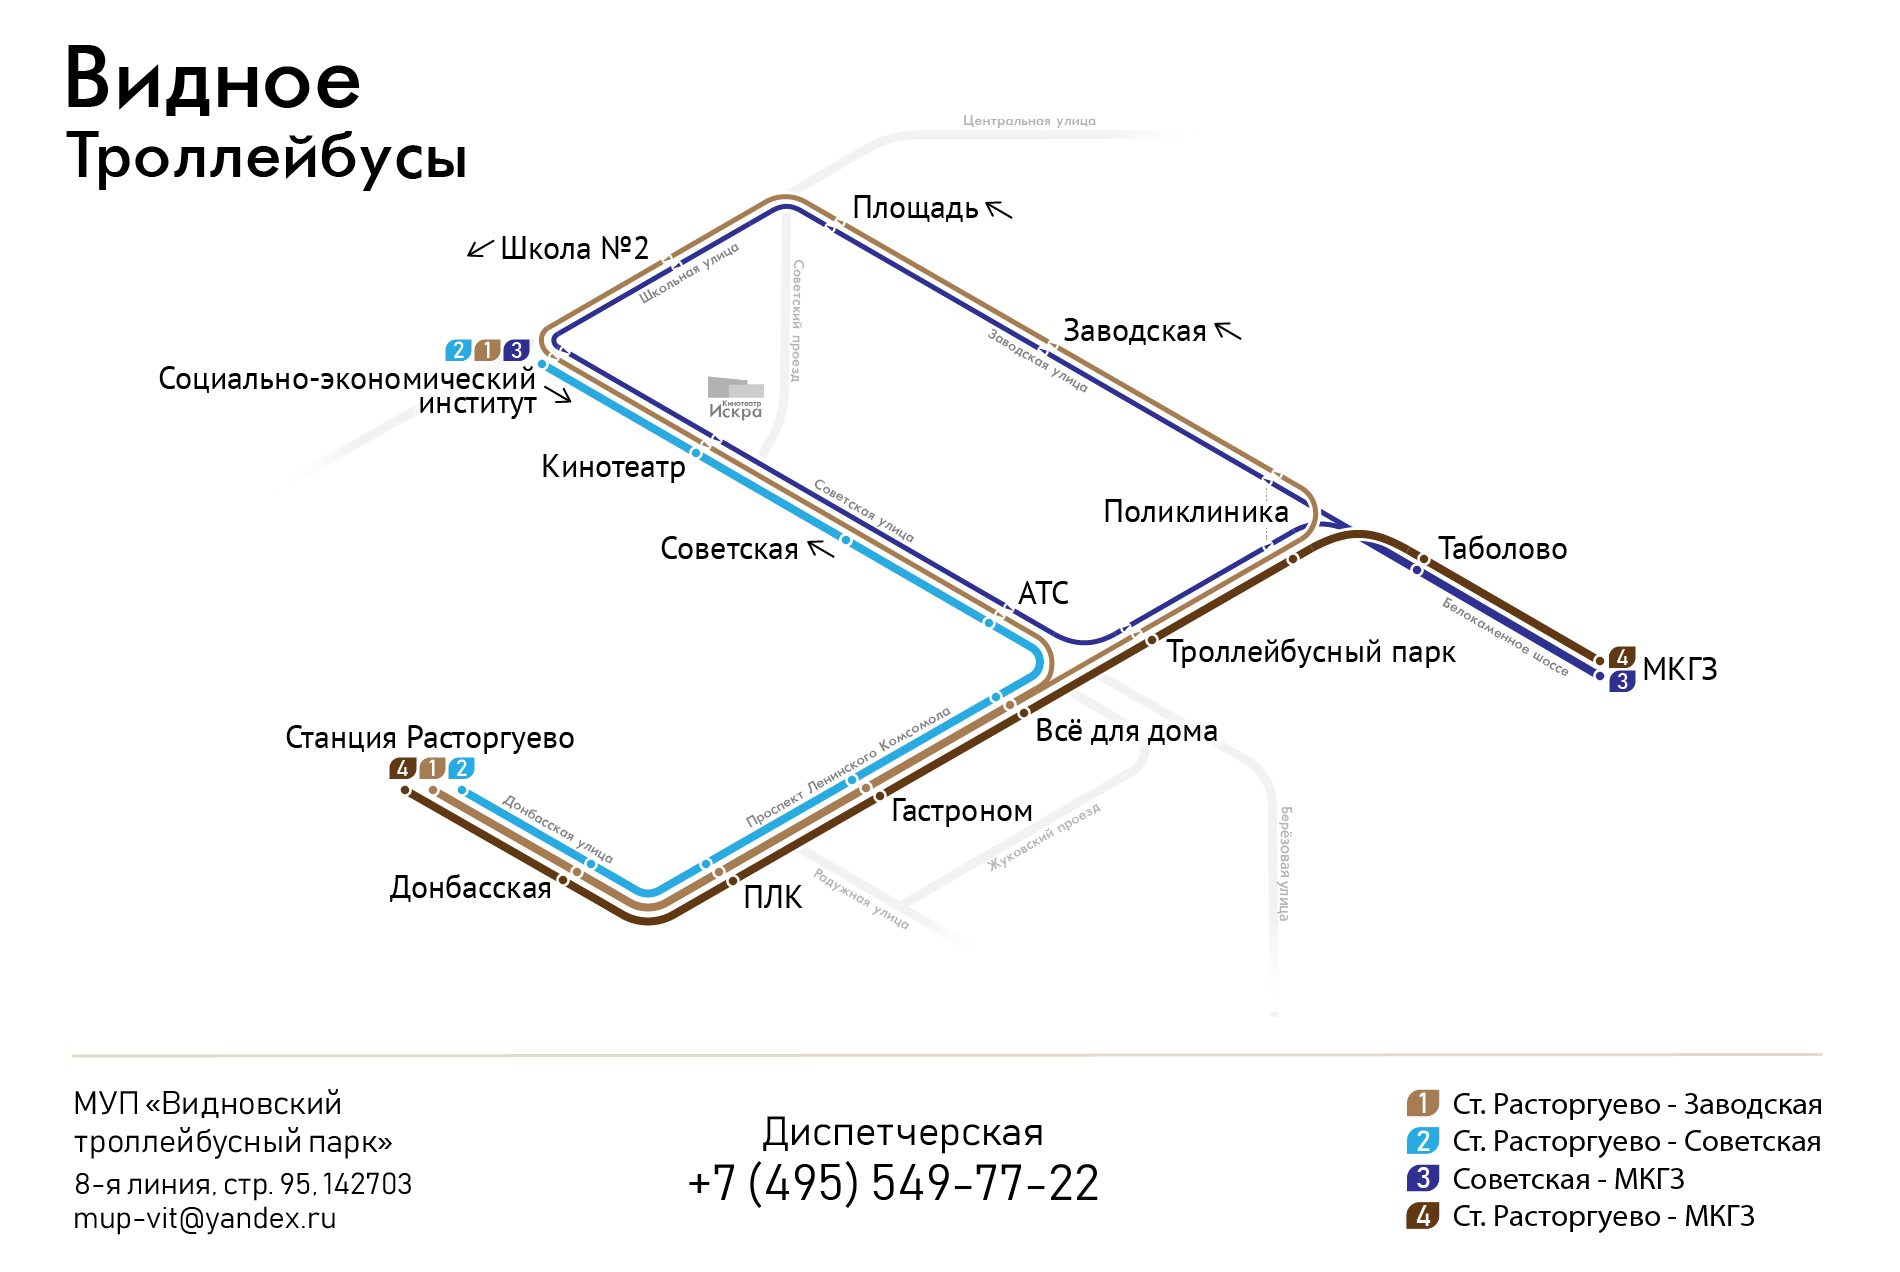 Схема троллейбусных маршрутов Видное